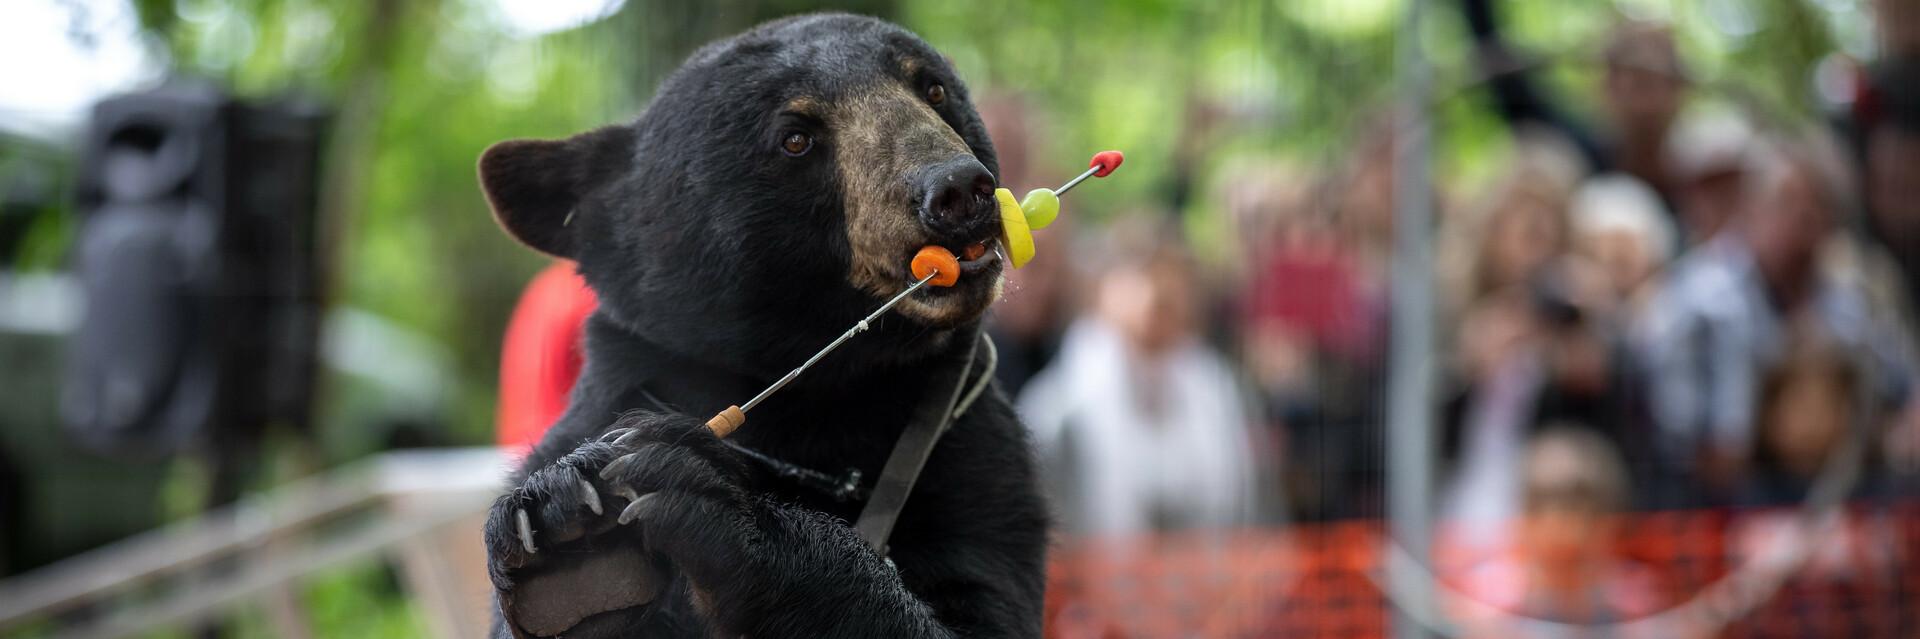 Un ours utilisé dans un spectacle de "montreur d'ours"